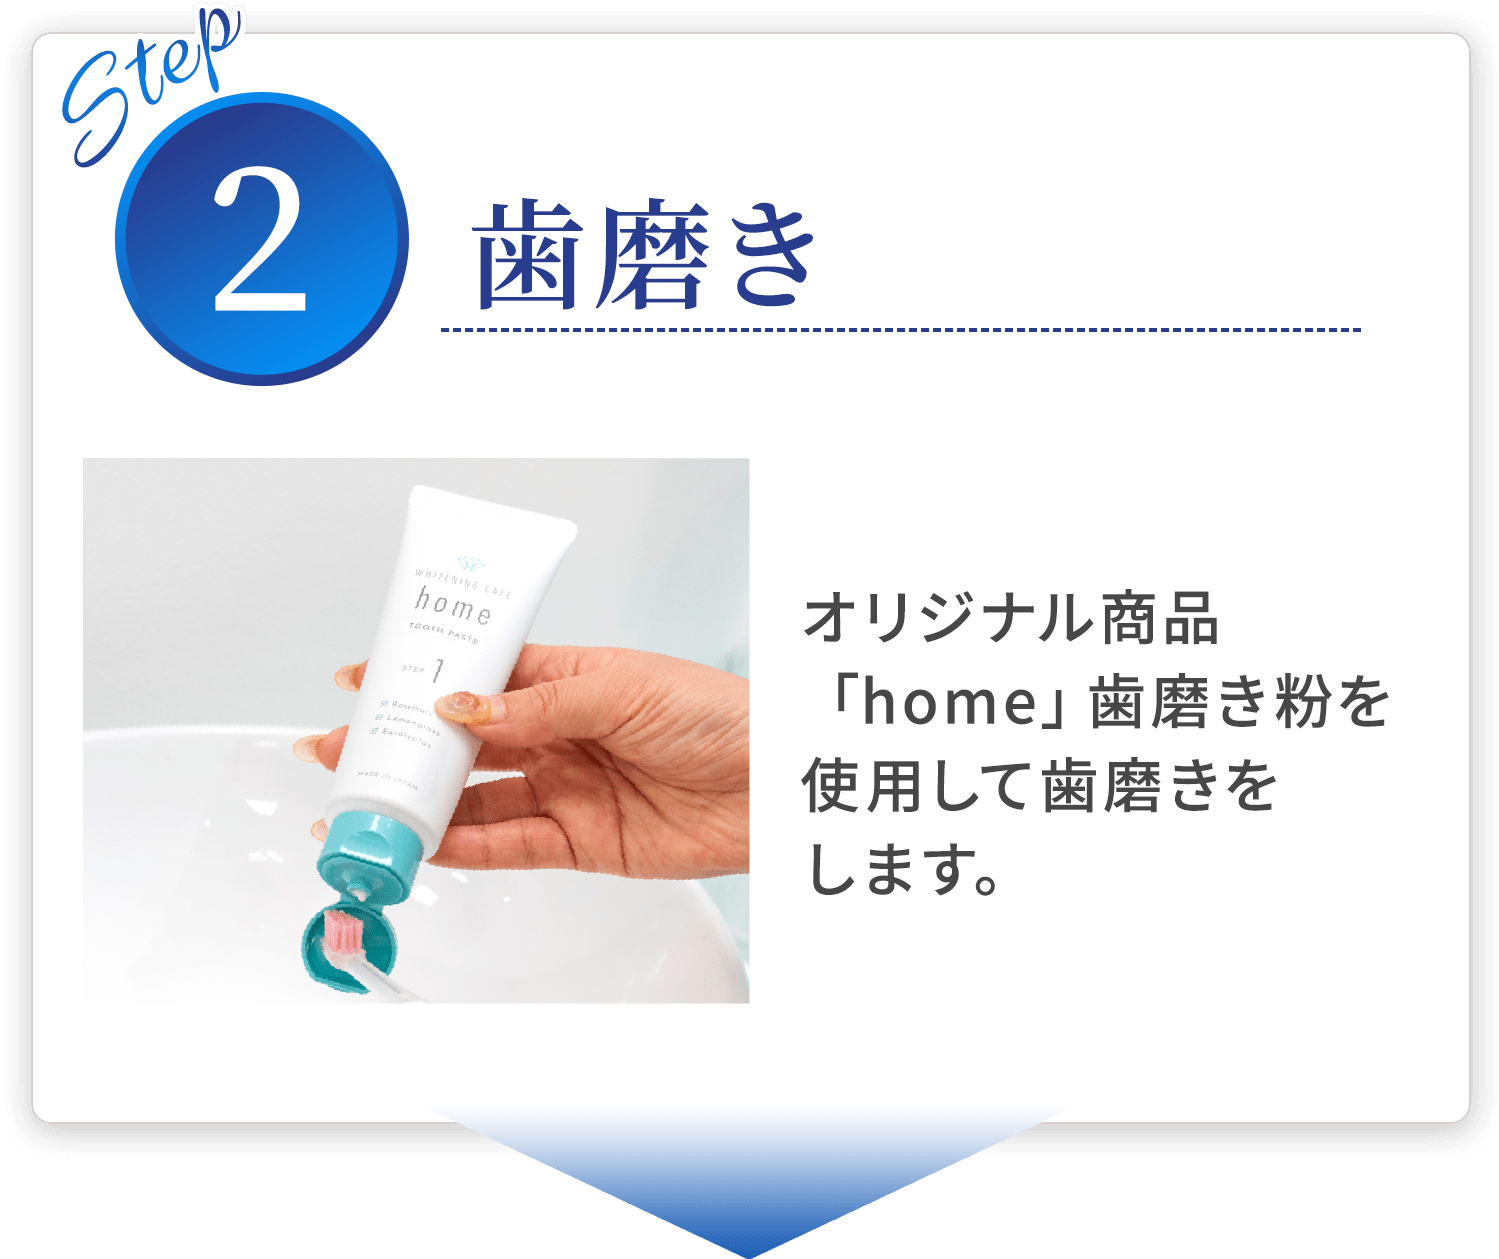 step02歯磨き オリジナル商品「home」歯磨き粉を使用して歯磨きをします。